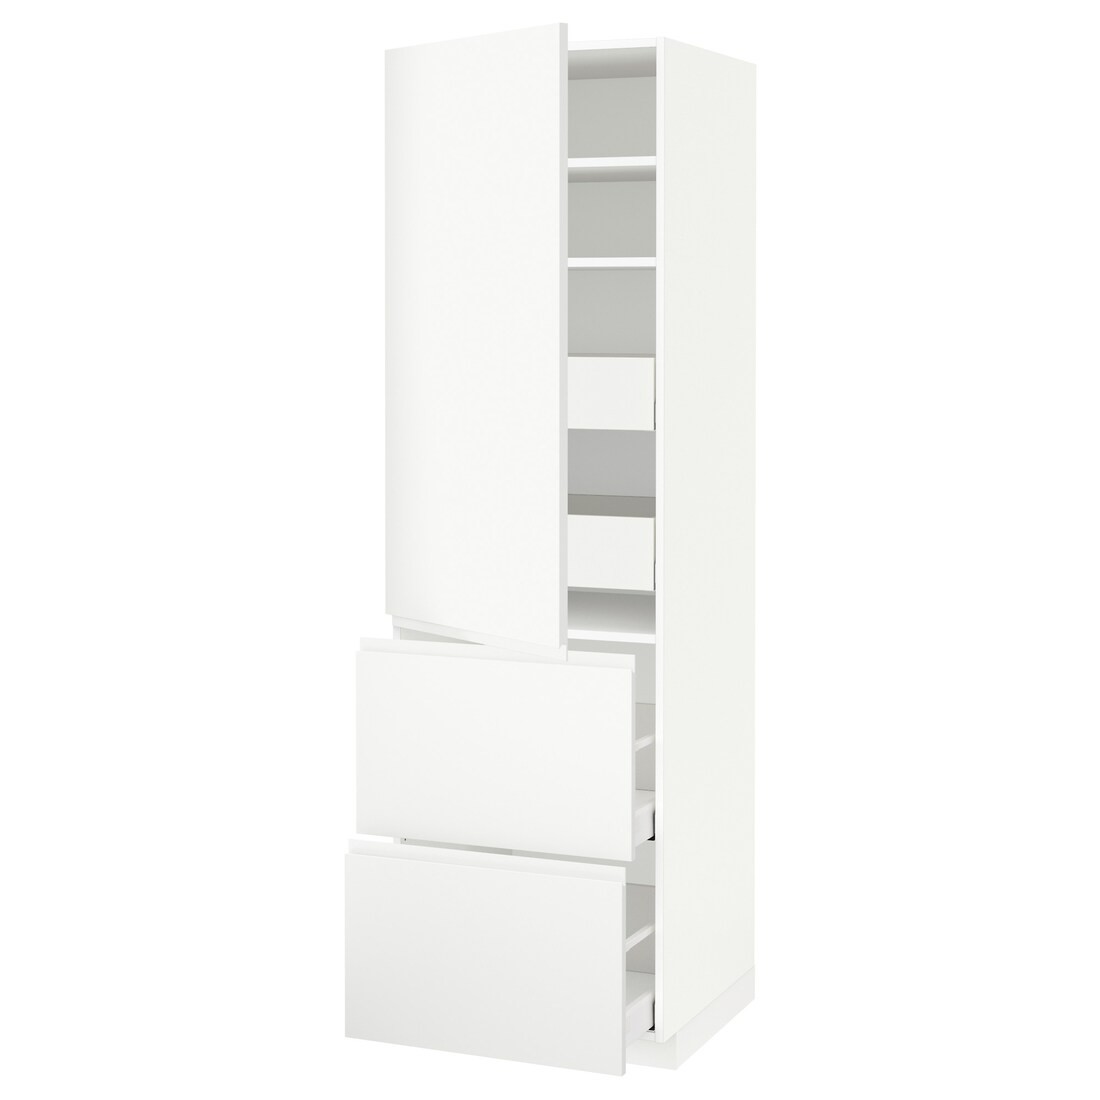 METOD МЕТОД / MAXIMERA МАКСИМЕРА Высокий шкаф с полками / ящиками, белый / Voxtorp матовый белый, 60x60x200 см